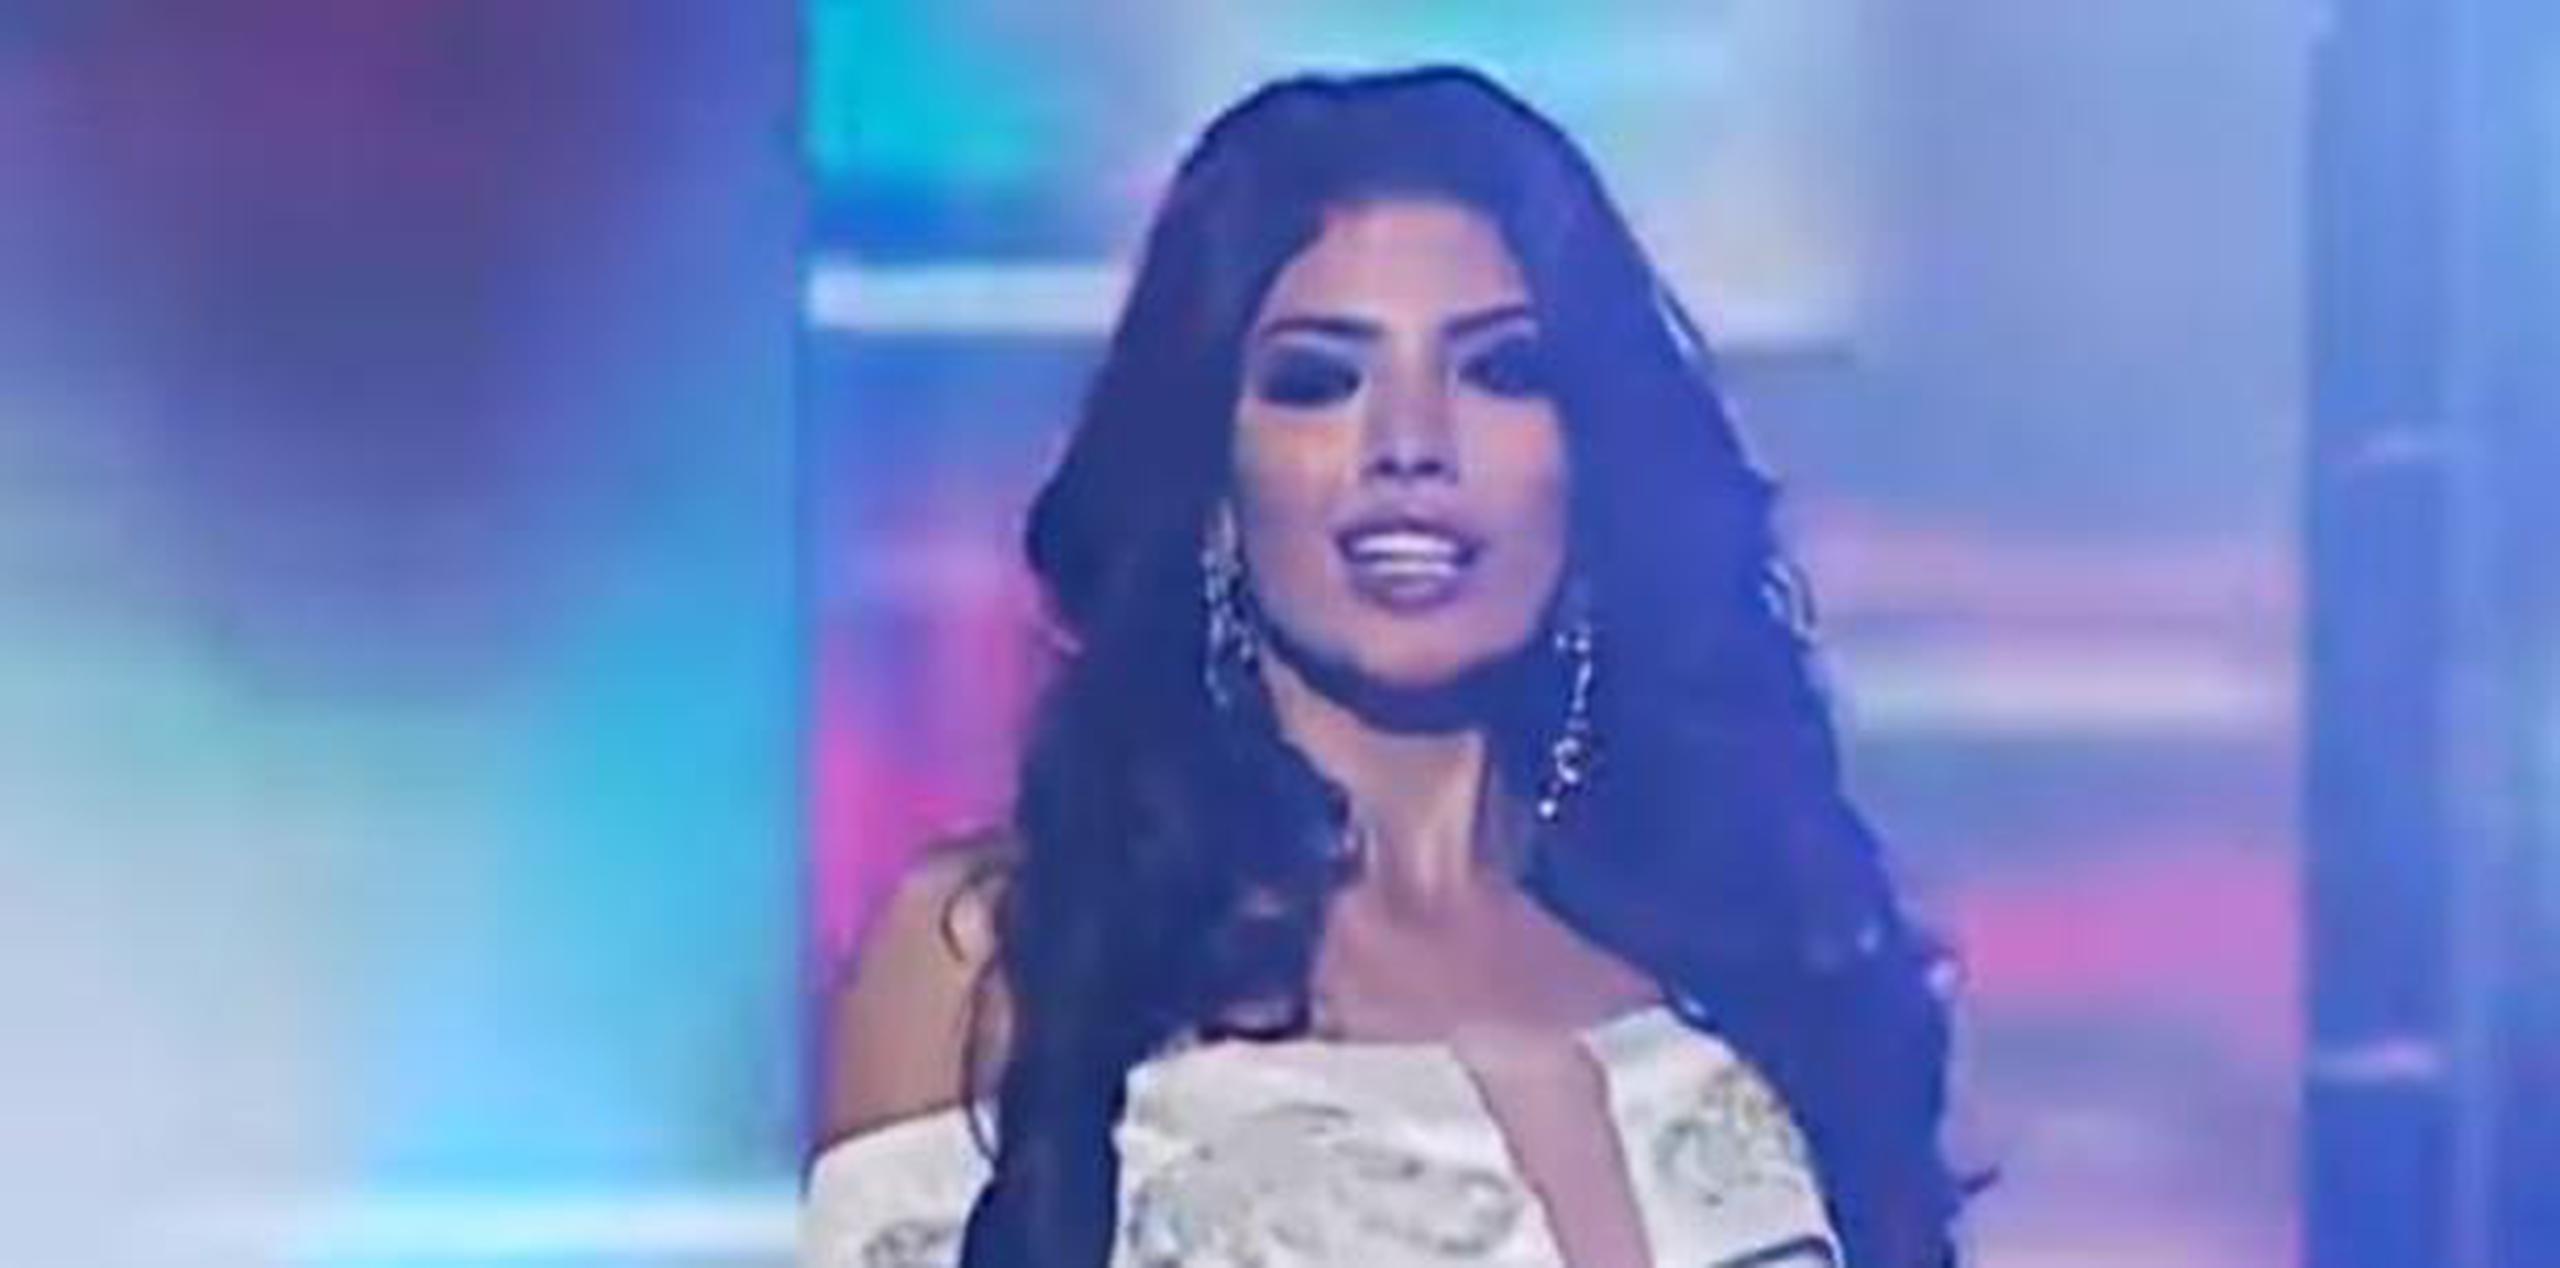 La directora de la organización Miss Perú anunció que la sucesora de Anyella Grados en el Miss Universo se elegirá en un nuevo certamen. (Captura)